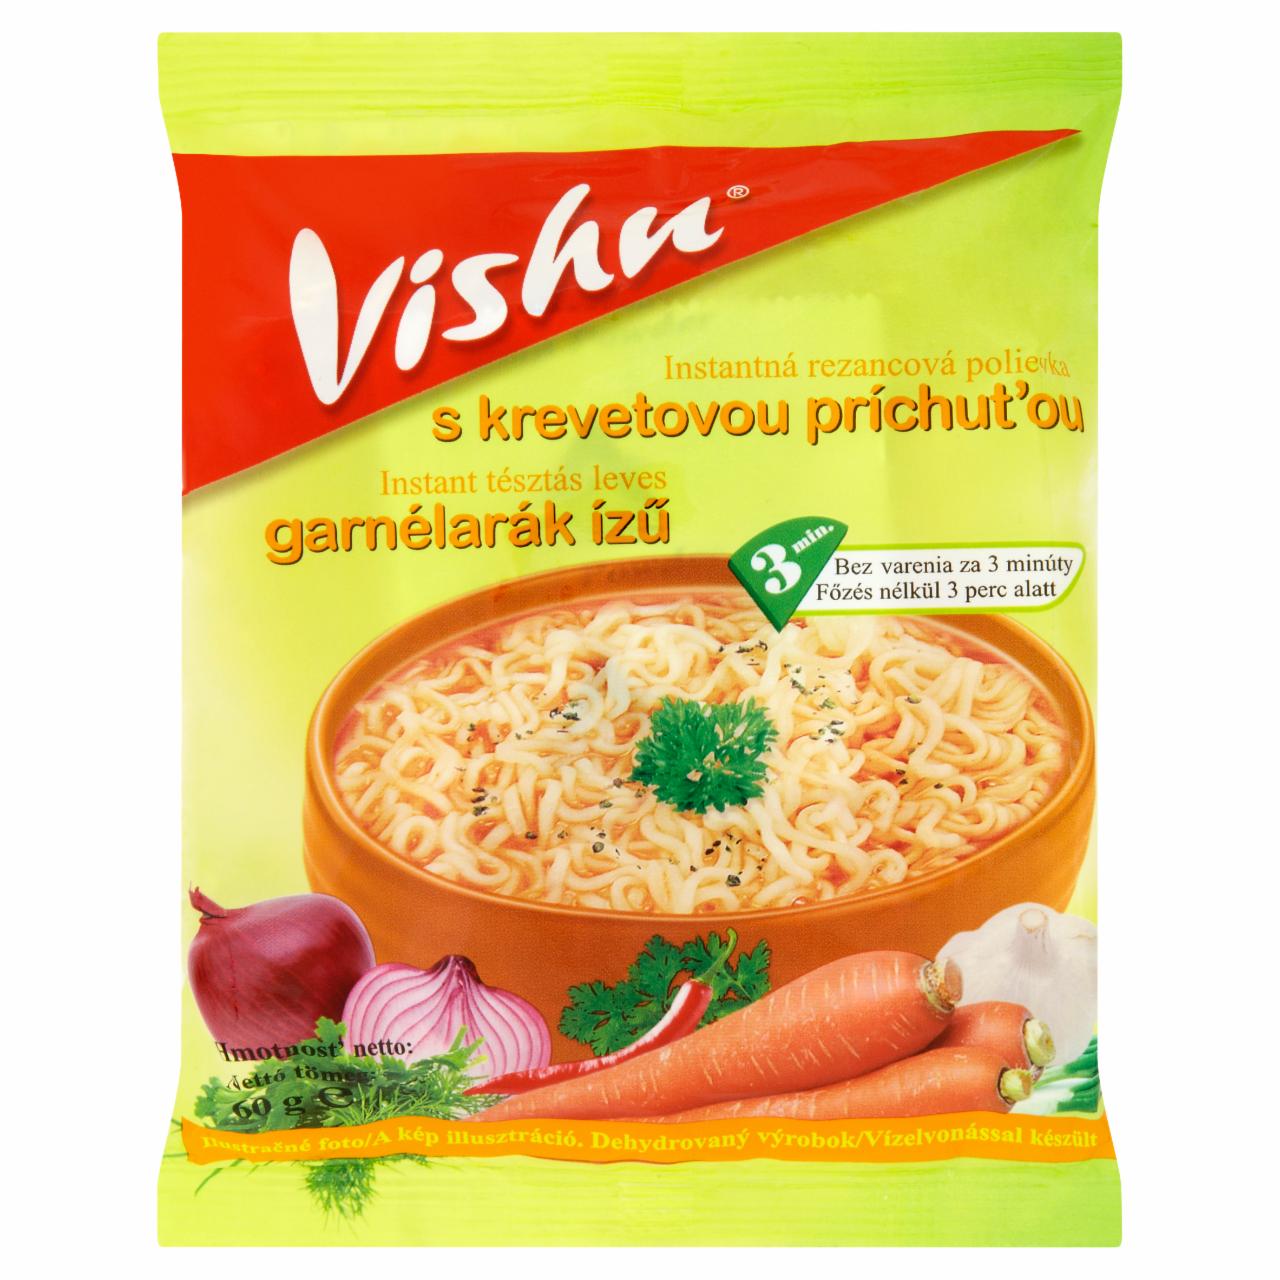 Képek - Garnélarák ízű instant tésztás leves Vishu